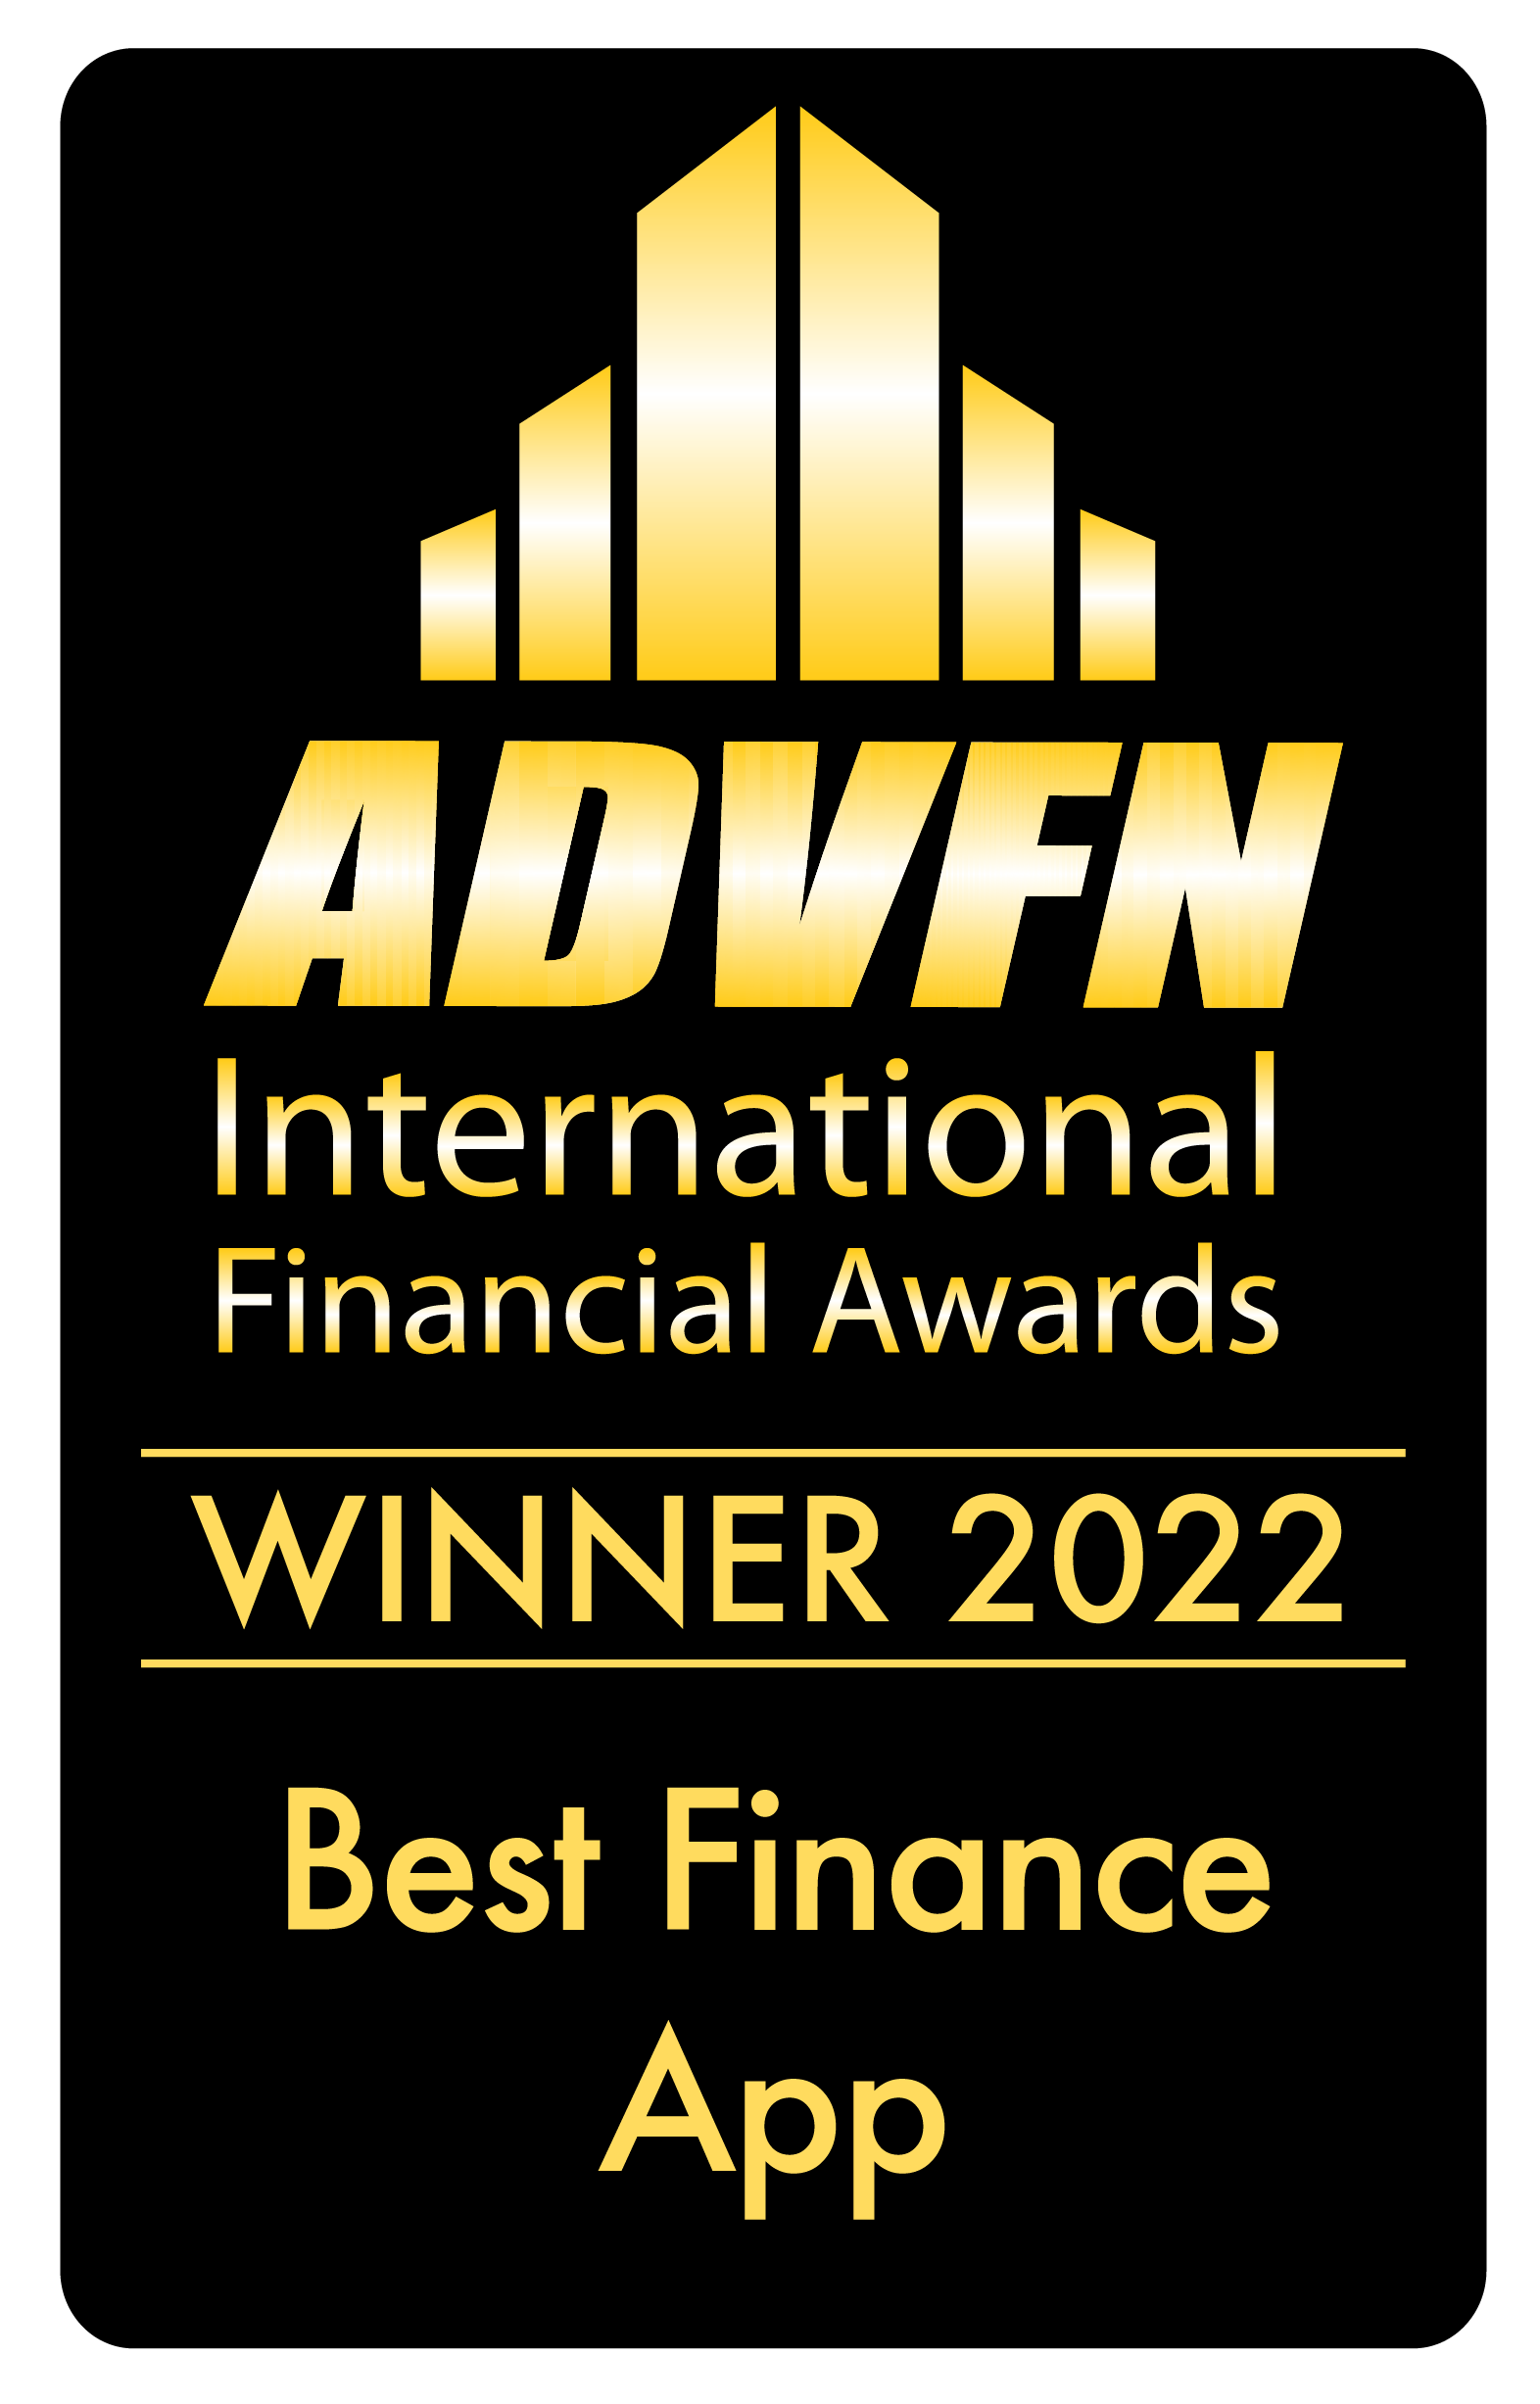 Best Finance App by ADVFN International Financial Awards